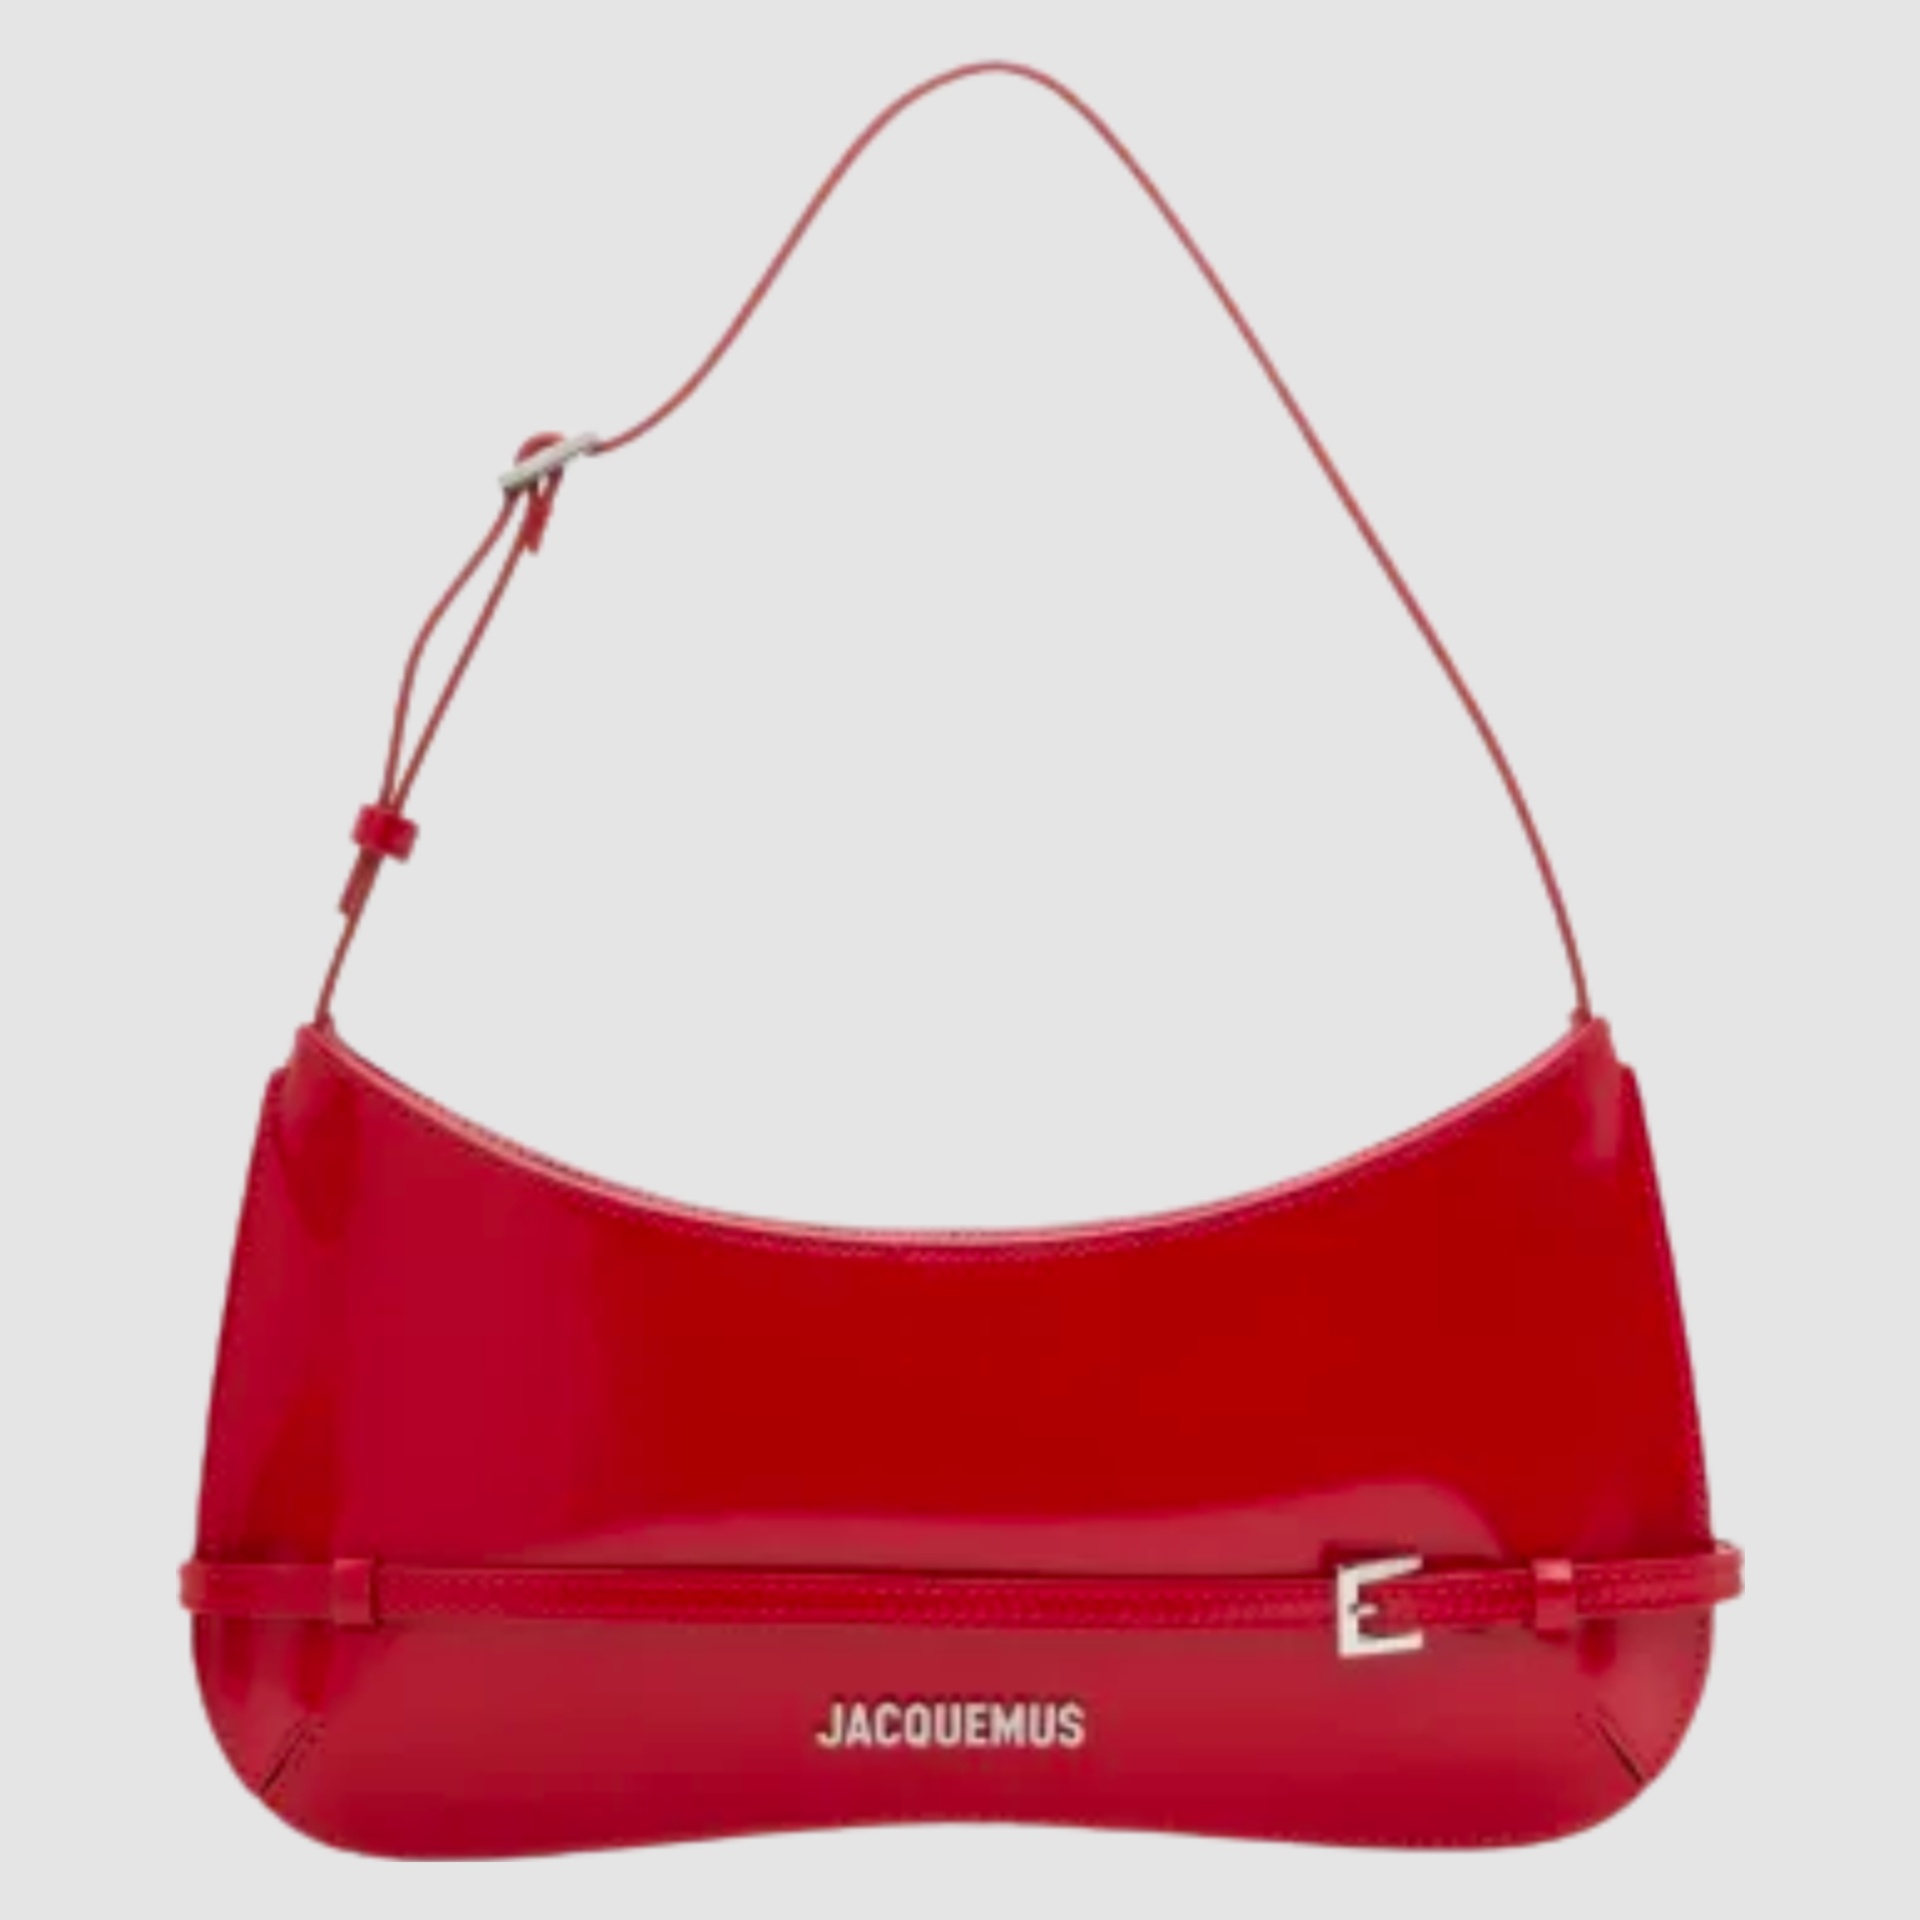 Jacquemus 'Le Bisou Ceinture' Bag